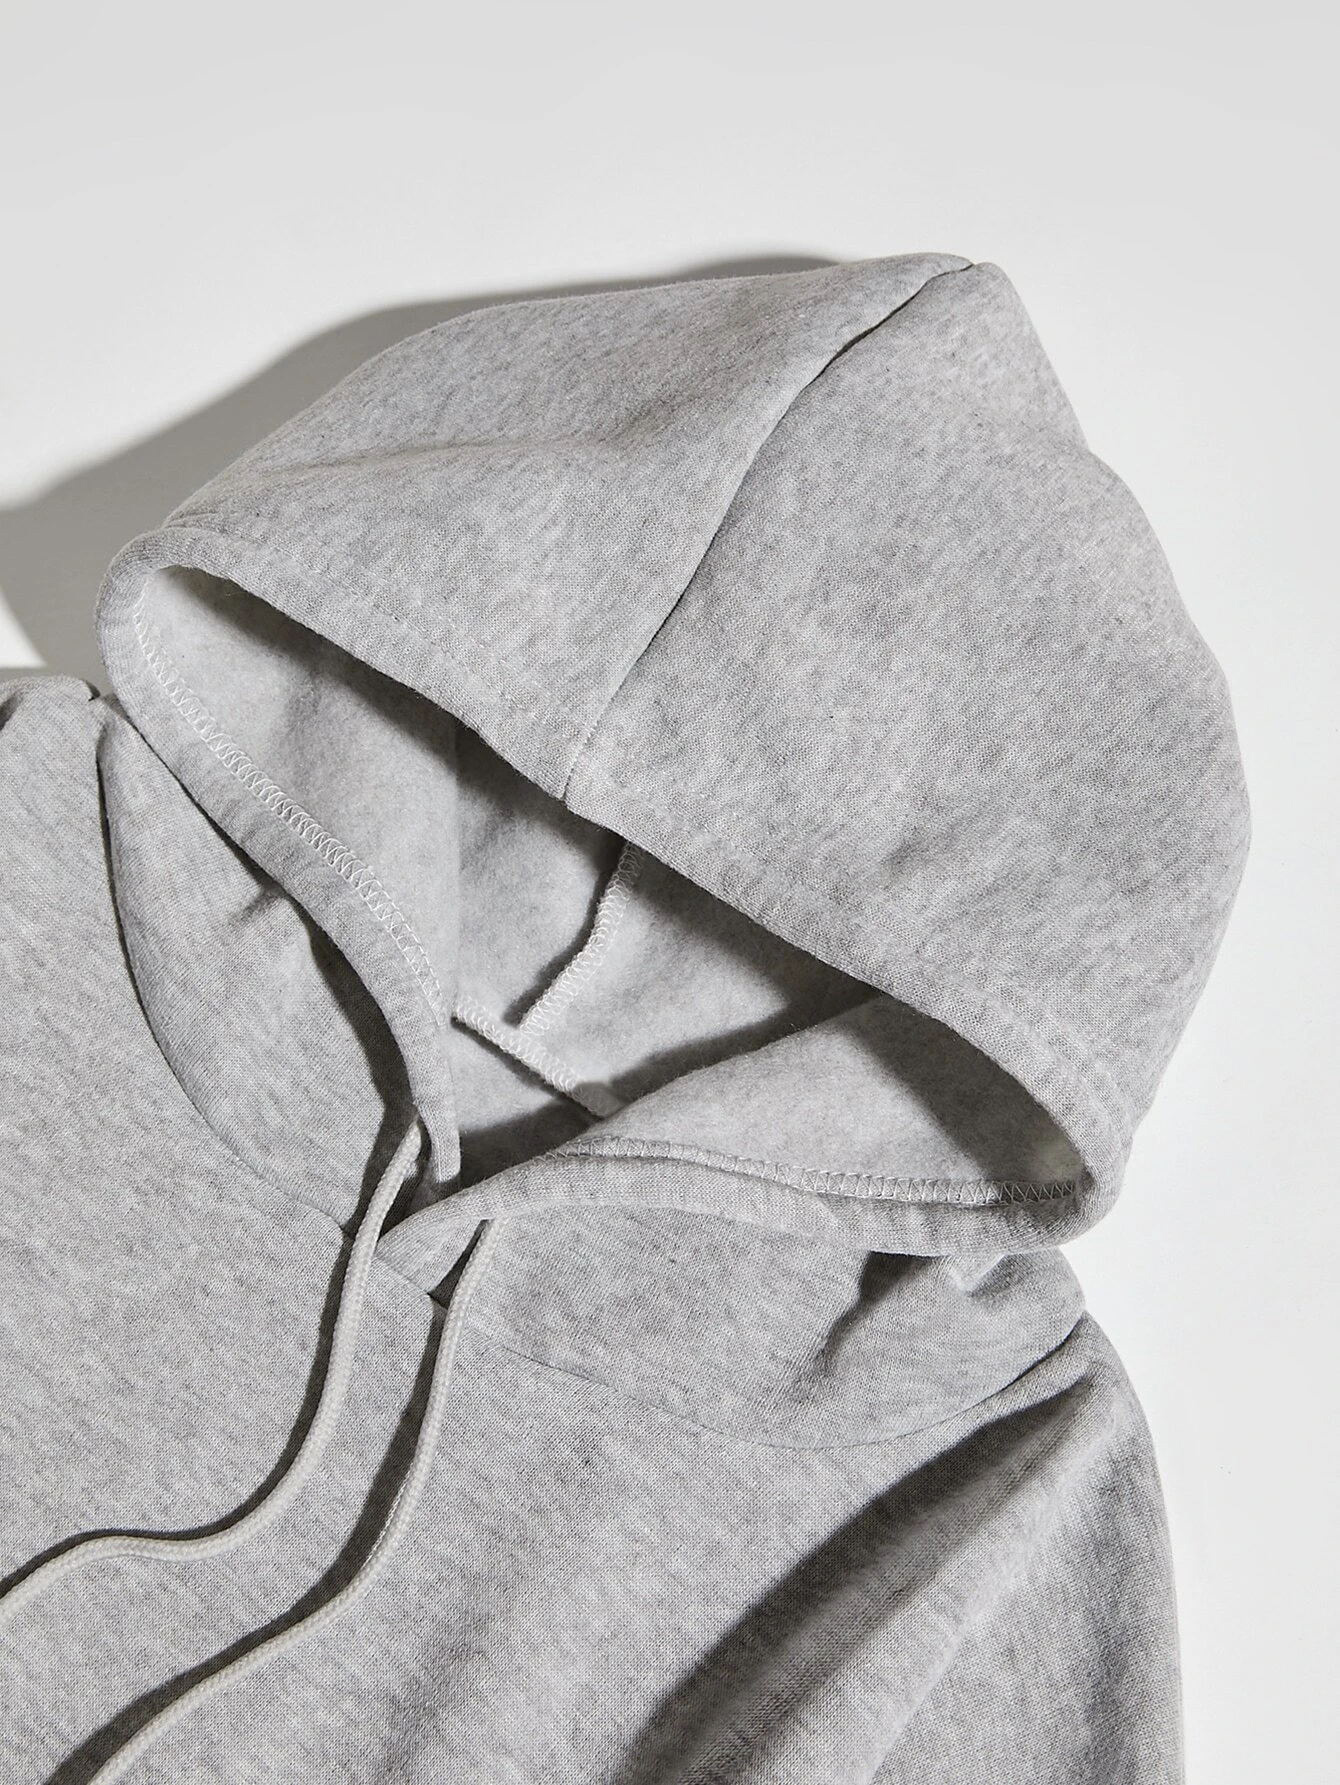 Women's Hoodie Long Sleeve Hoodies & Sweatshirts Printing Pocket Simple Style Letter display picture 17